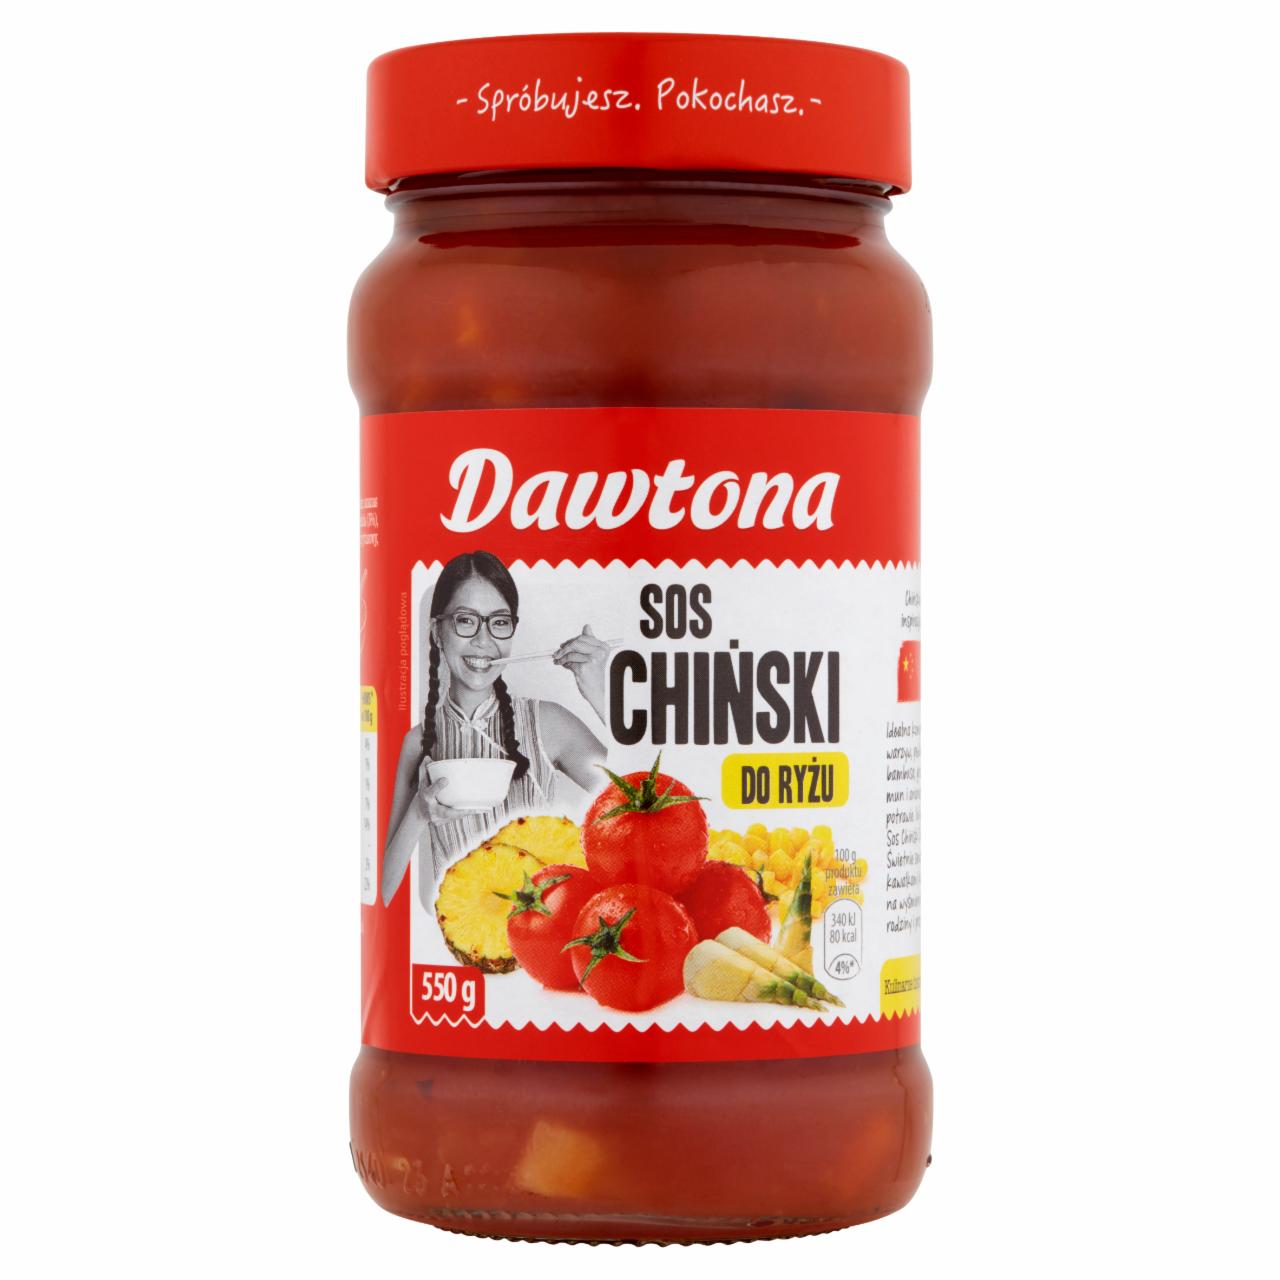 Photo - Dawtona Chinese Rice Sauce 550 g